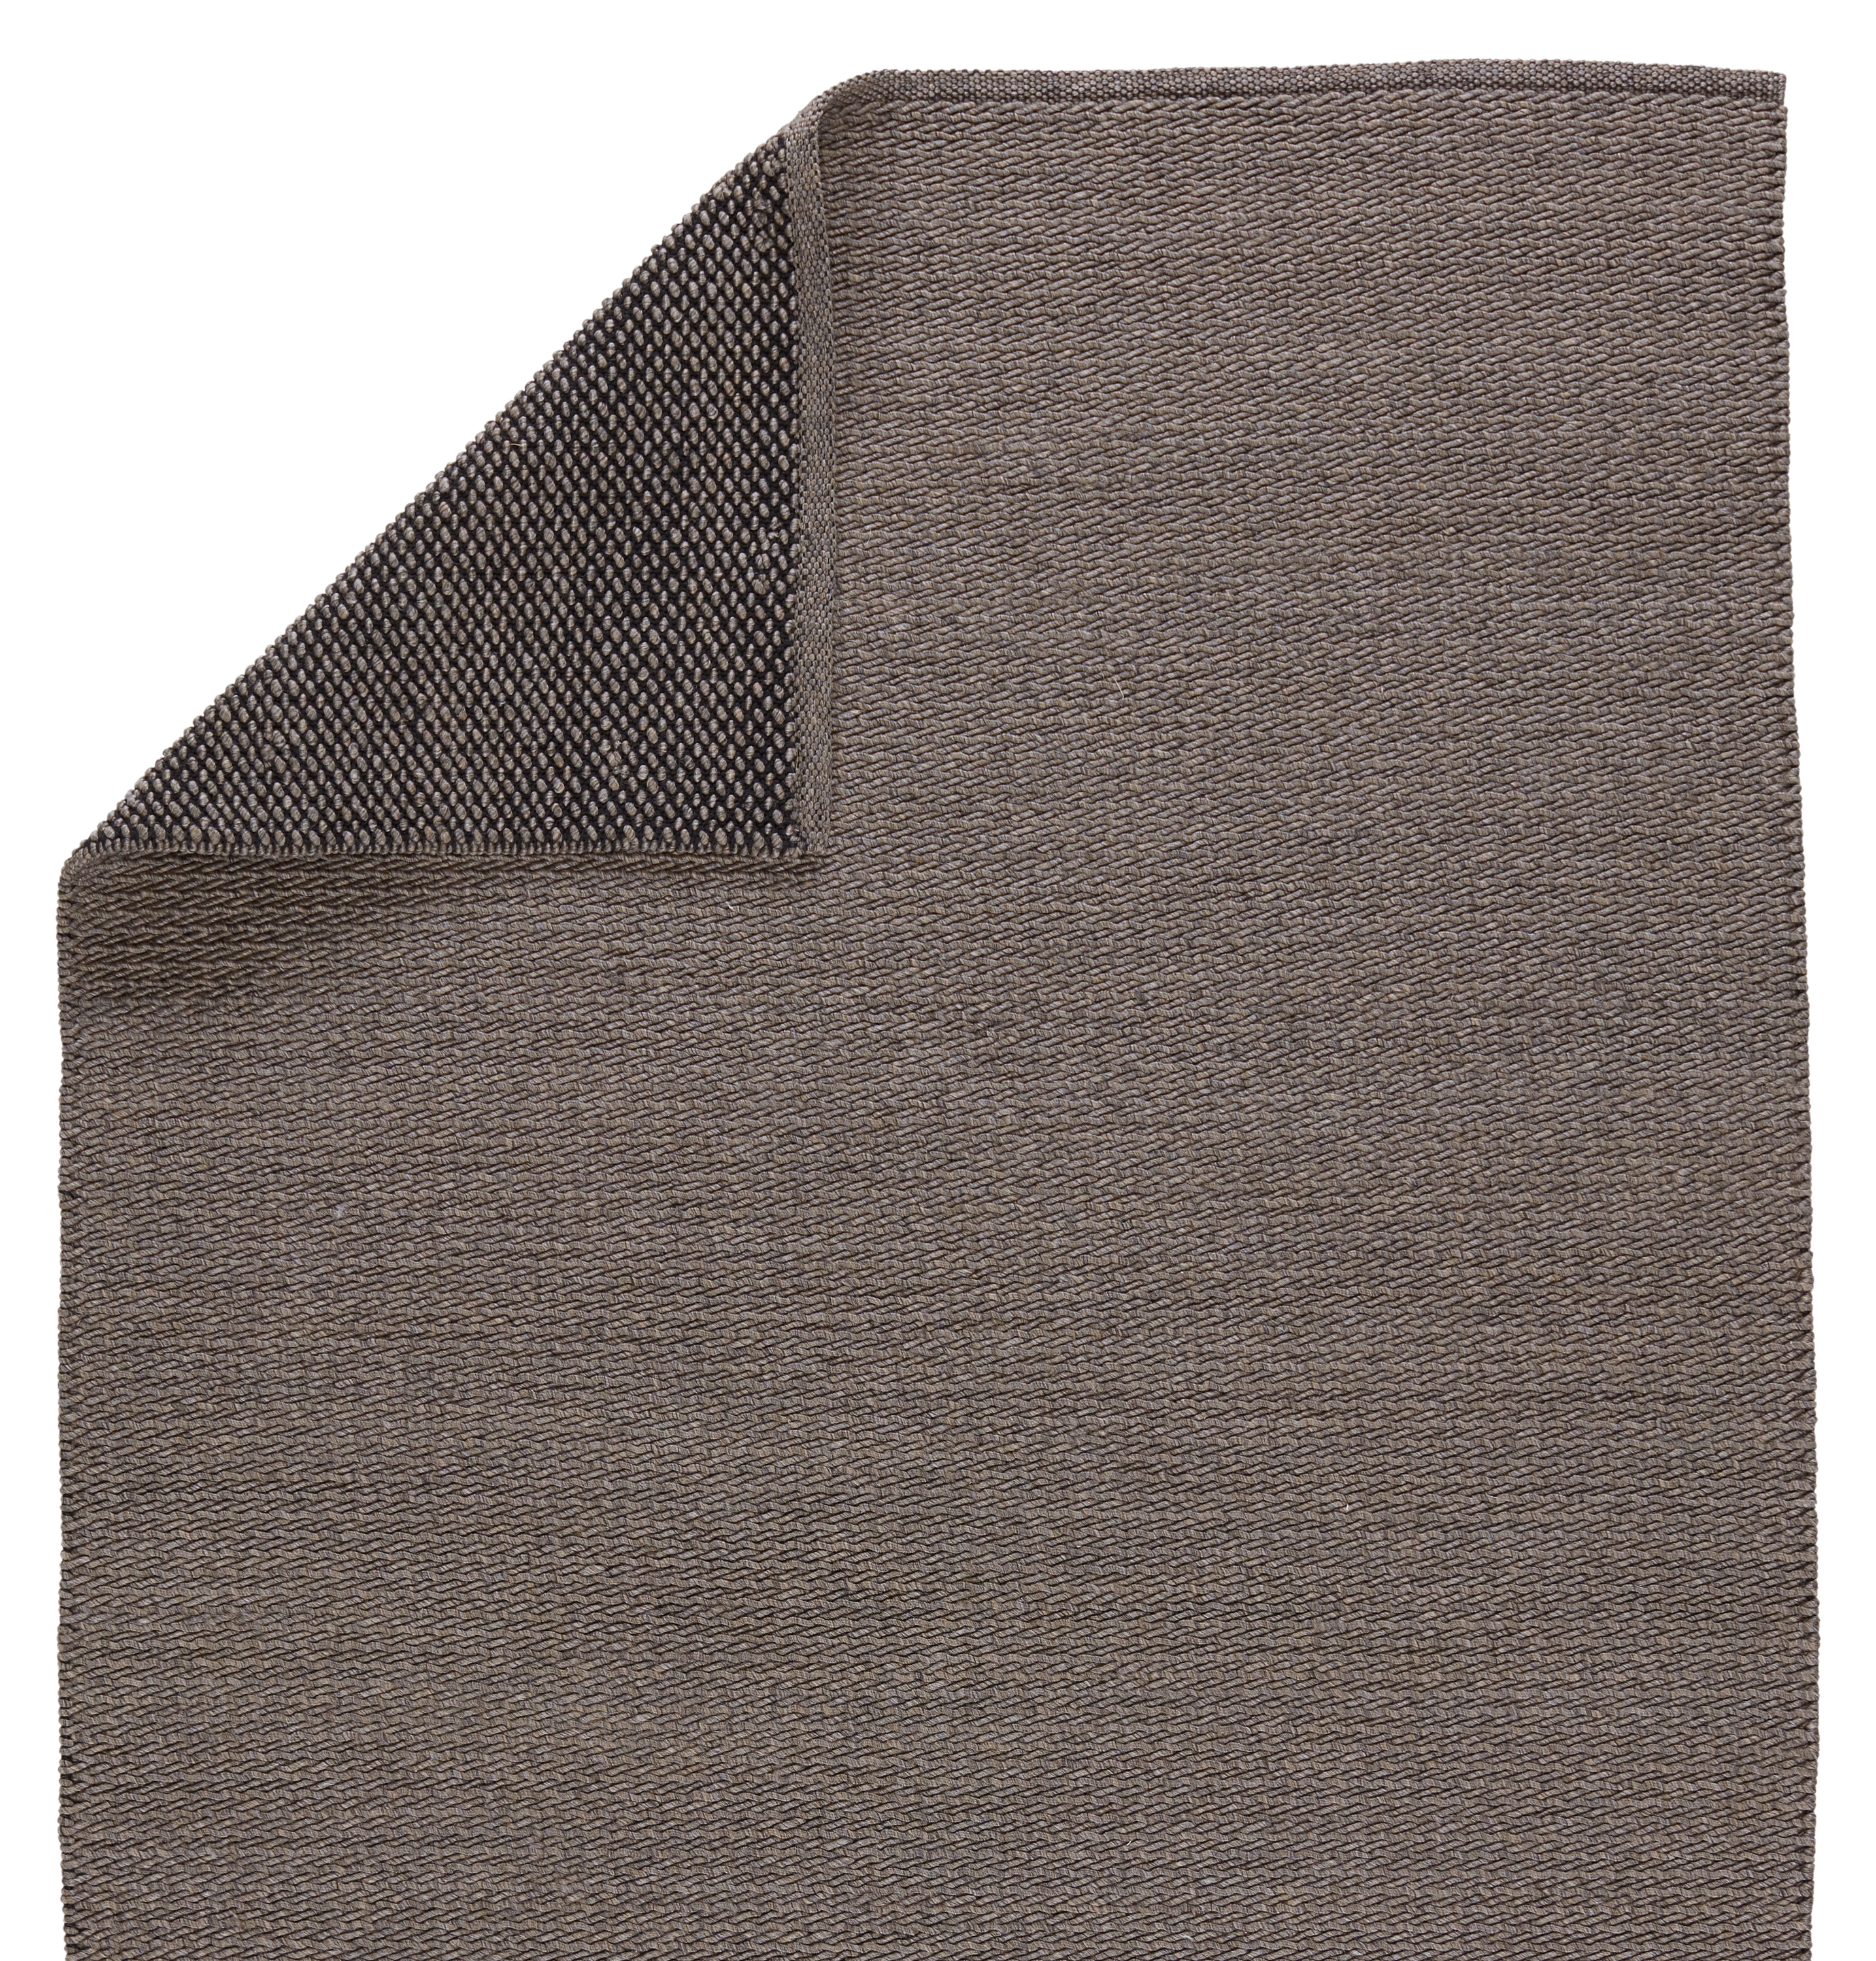 Ryker Indoor/ Outdoor Solid Brown/ Gray Area Rug (7'6"X9'6") - Image 2